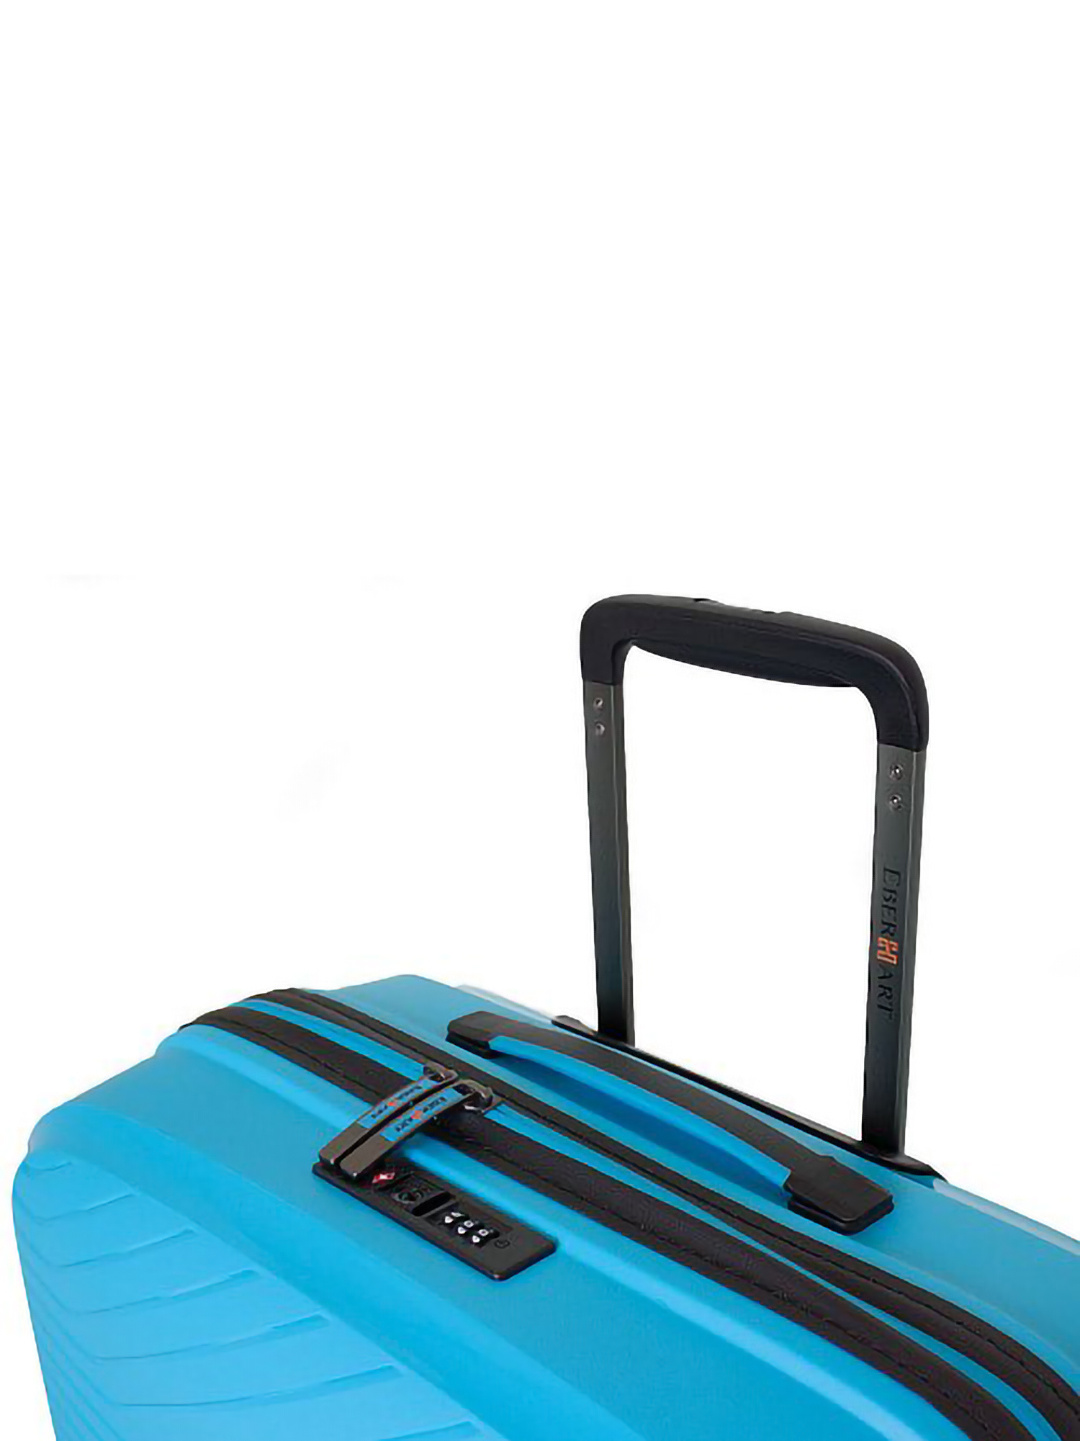 Фото Большой чемодан на двойных колесах серии Delight Чемоданы